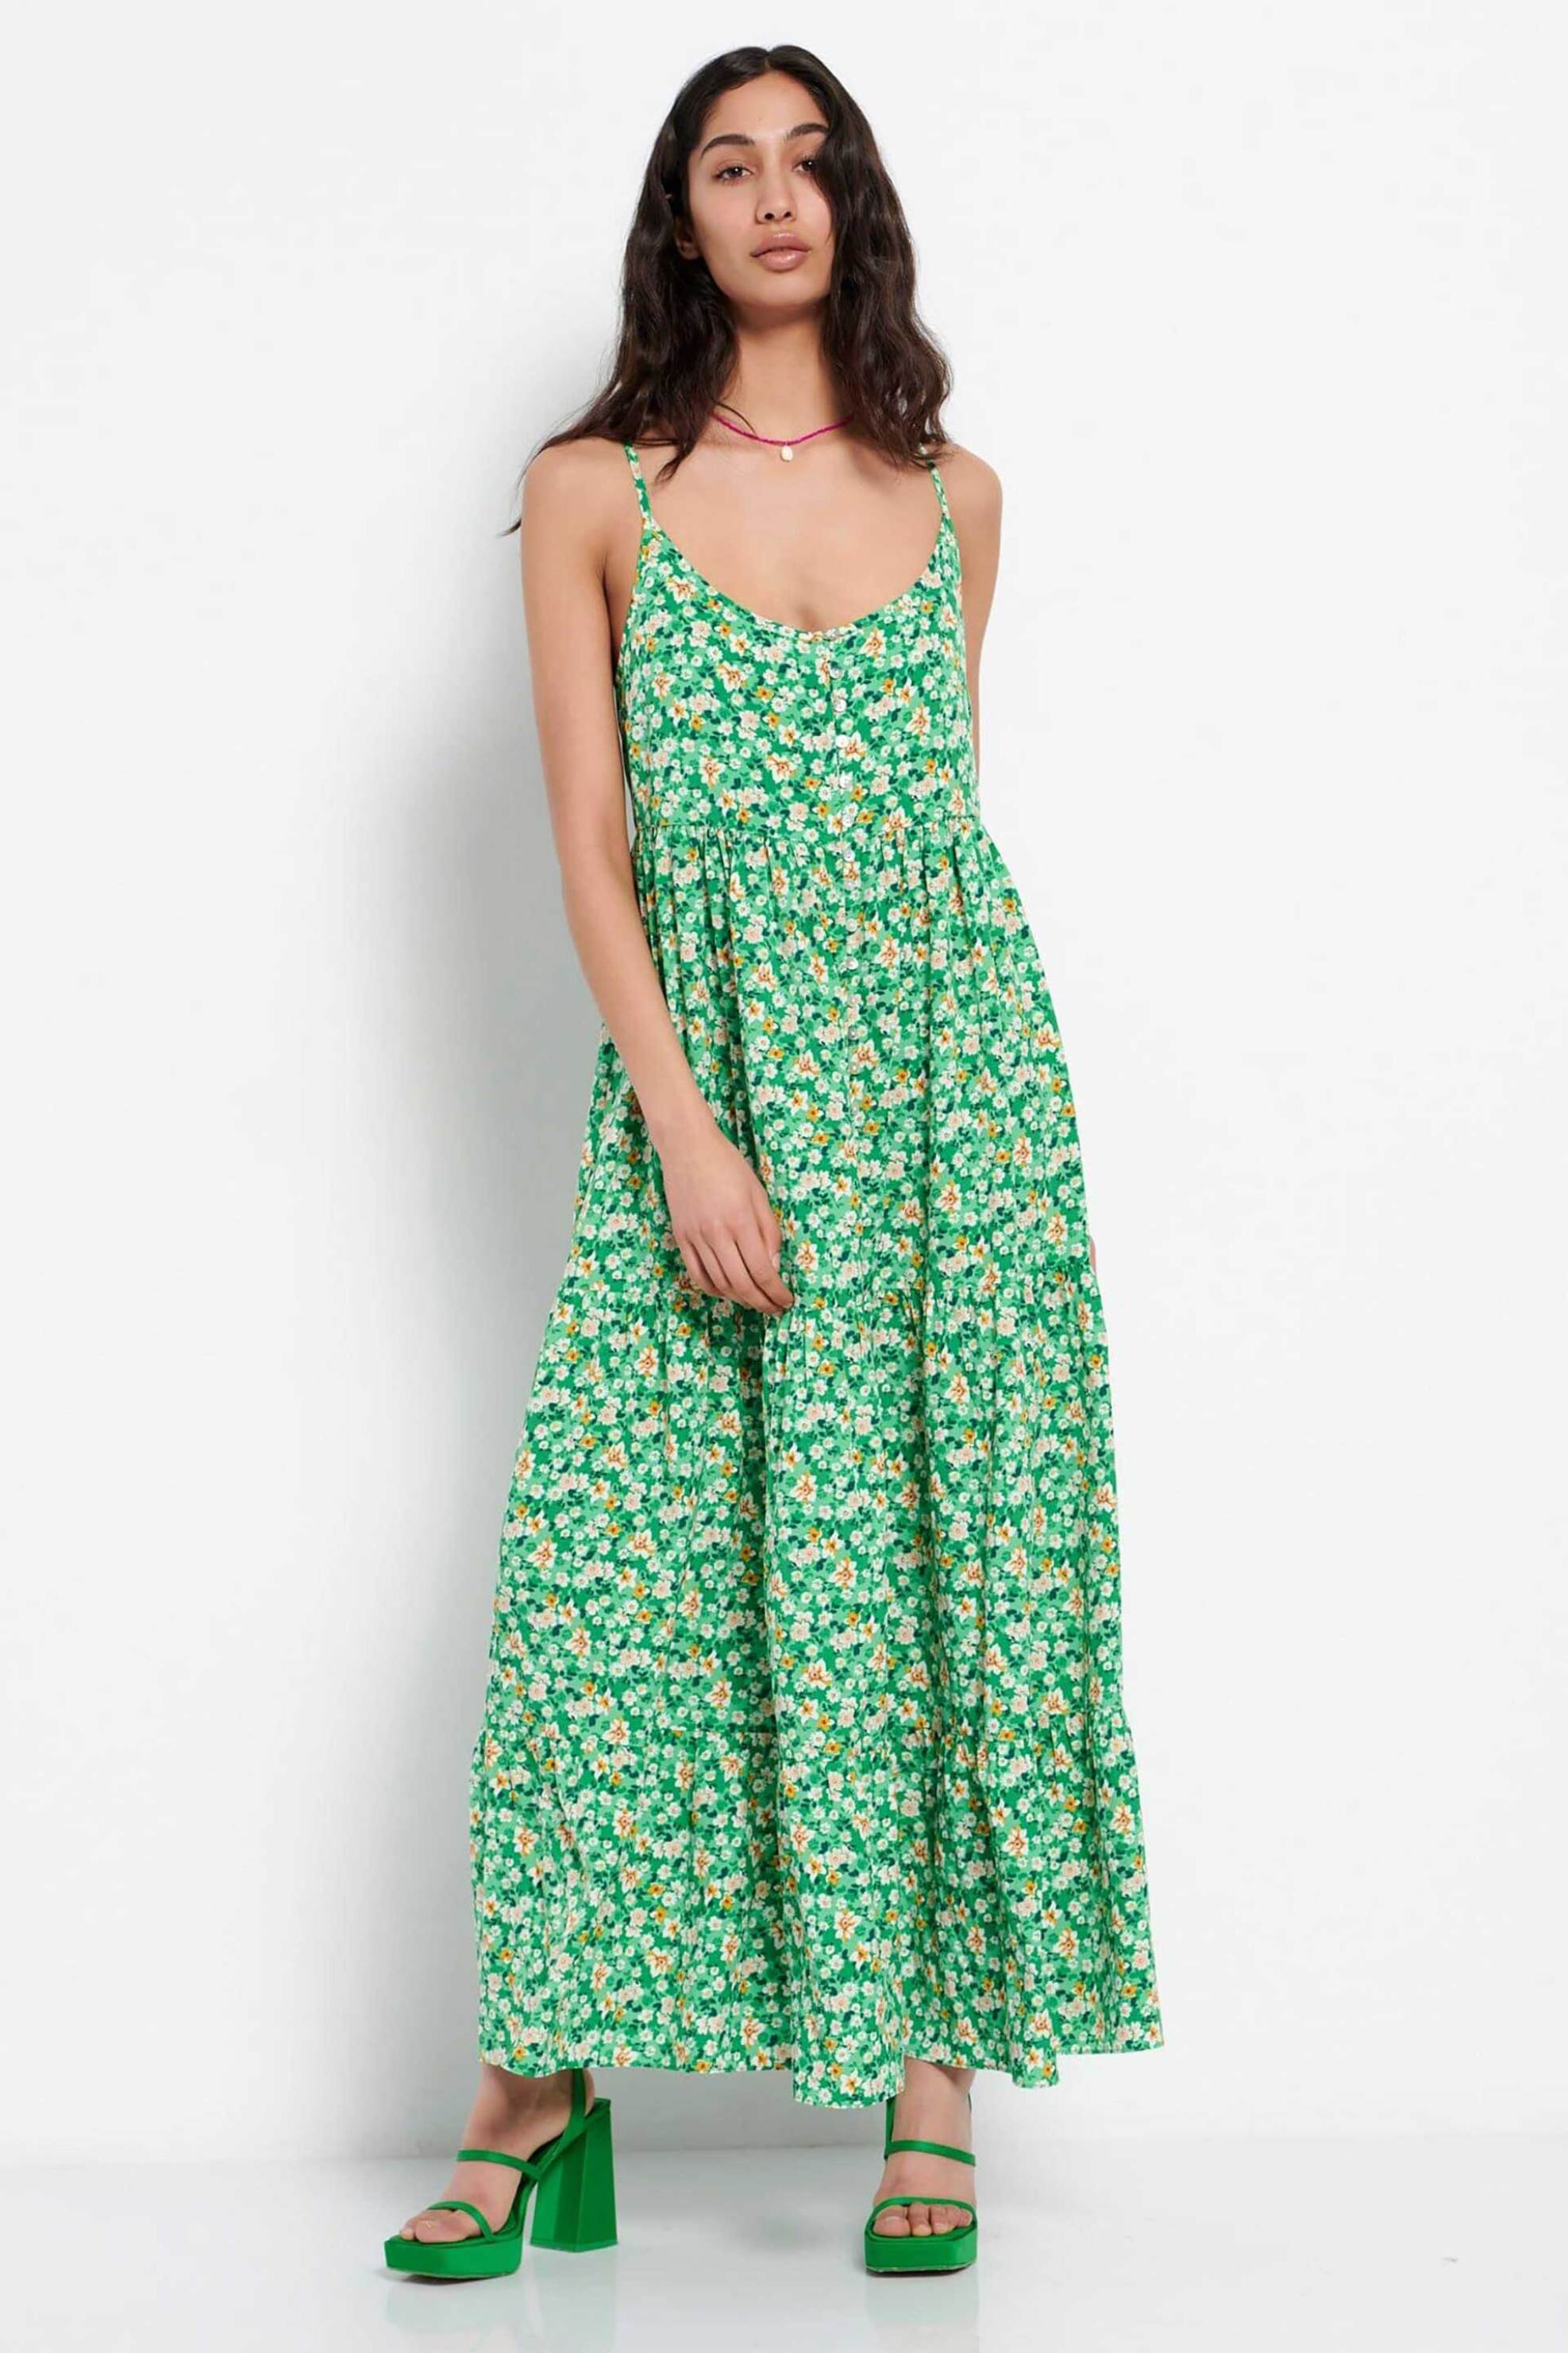 Γυναίκα > ΡΟΥΧΑ > Φορέματα > Maxi Funky Buddha γυναικείο maxi φόρεμα με all-over floral print και άνοιγμα μπροστά - FBL007-135-13 Πράσινο